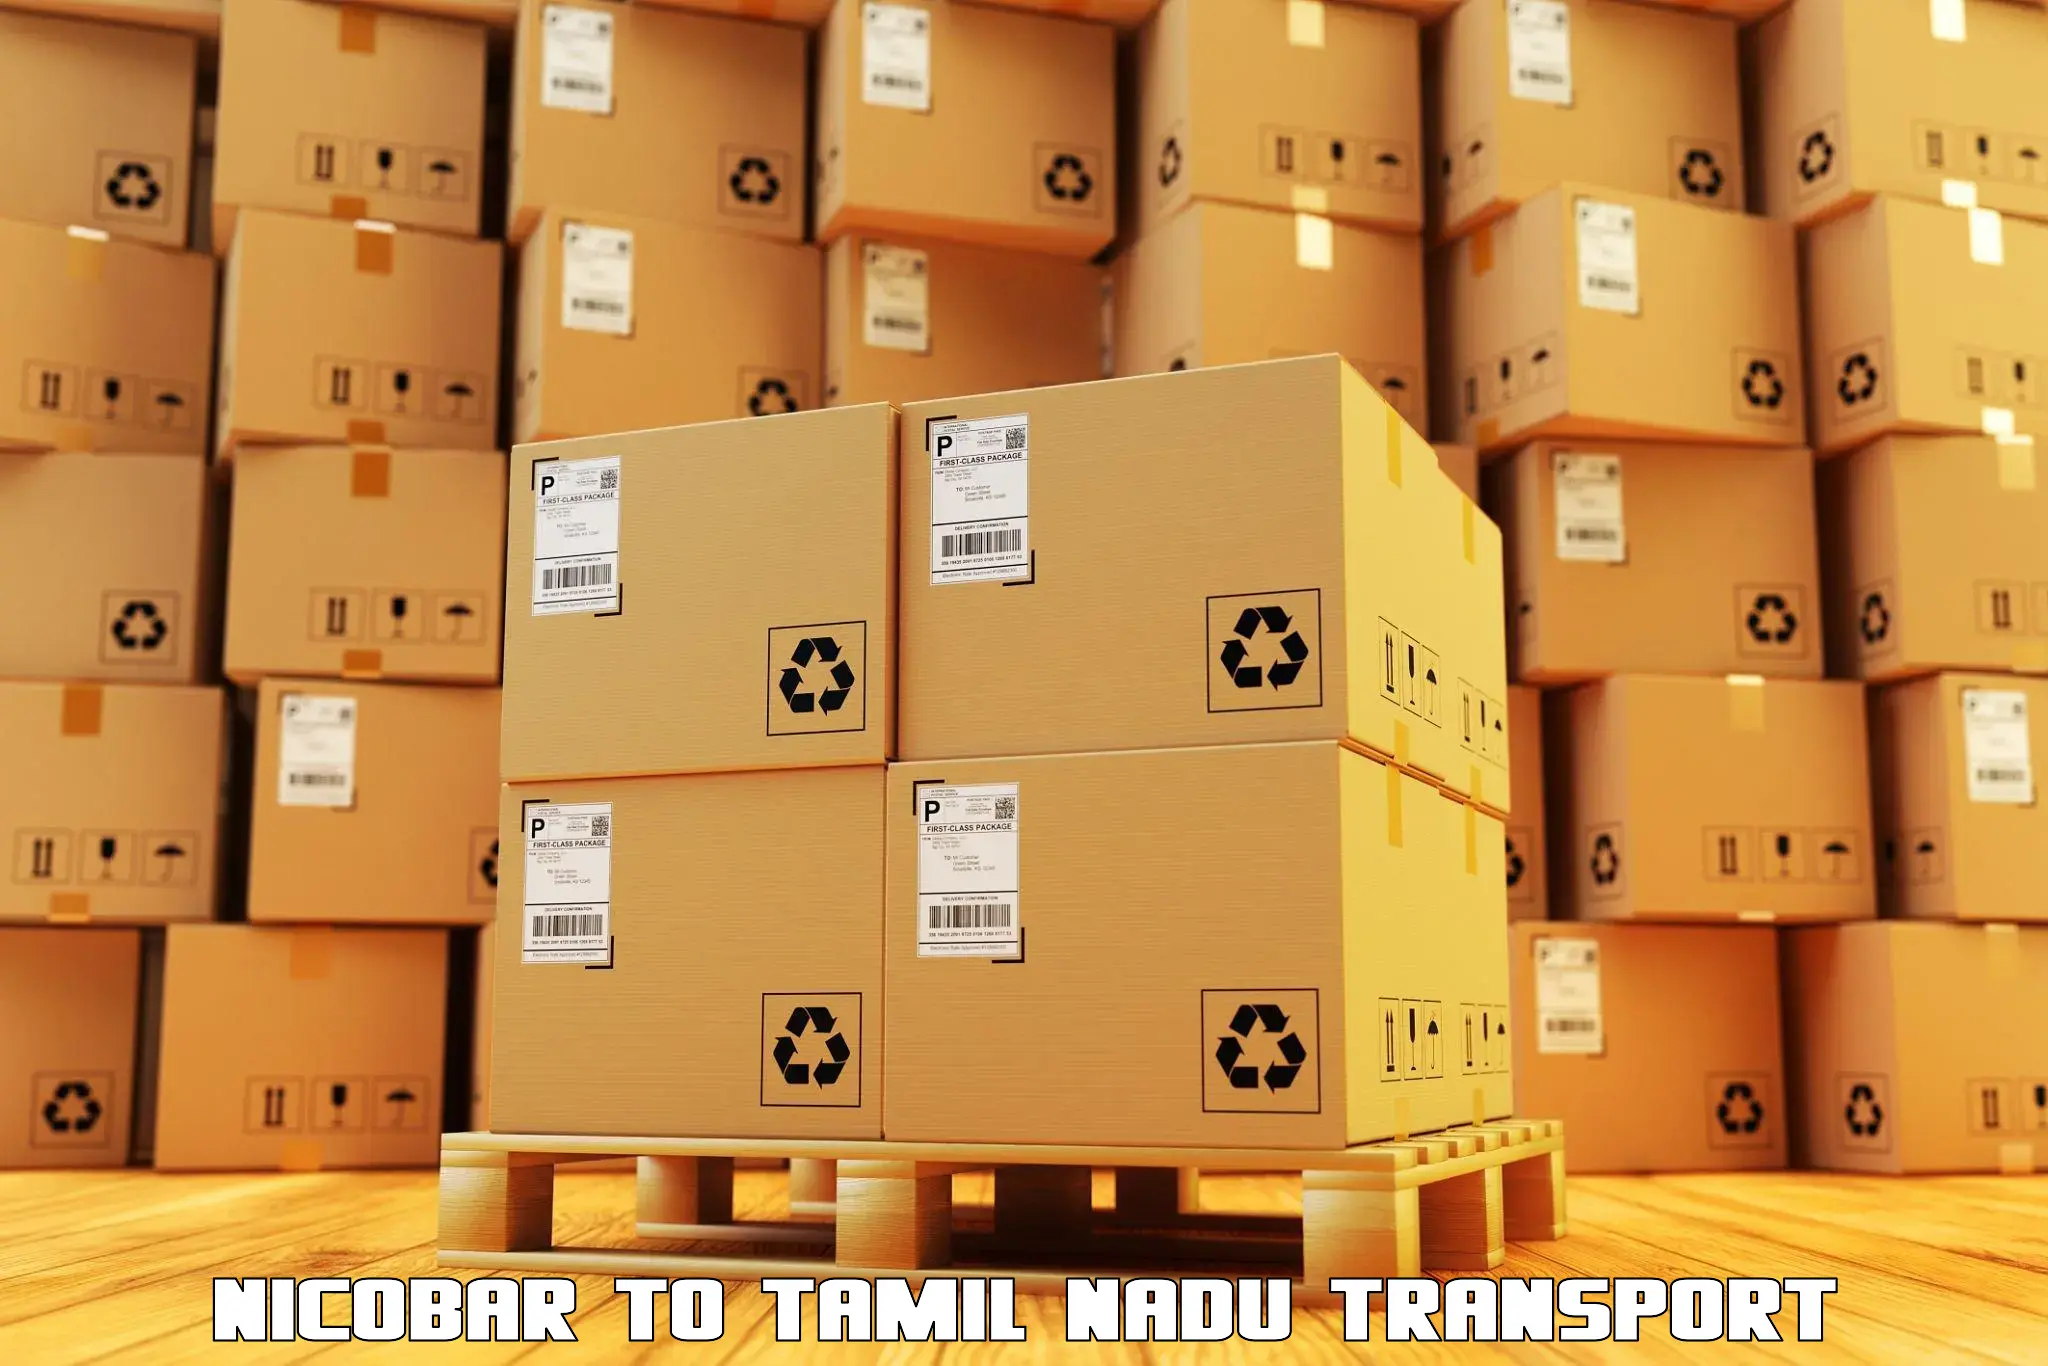 Part load transport service in India Nicobar to Kulithalai